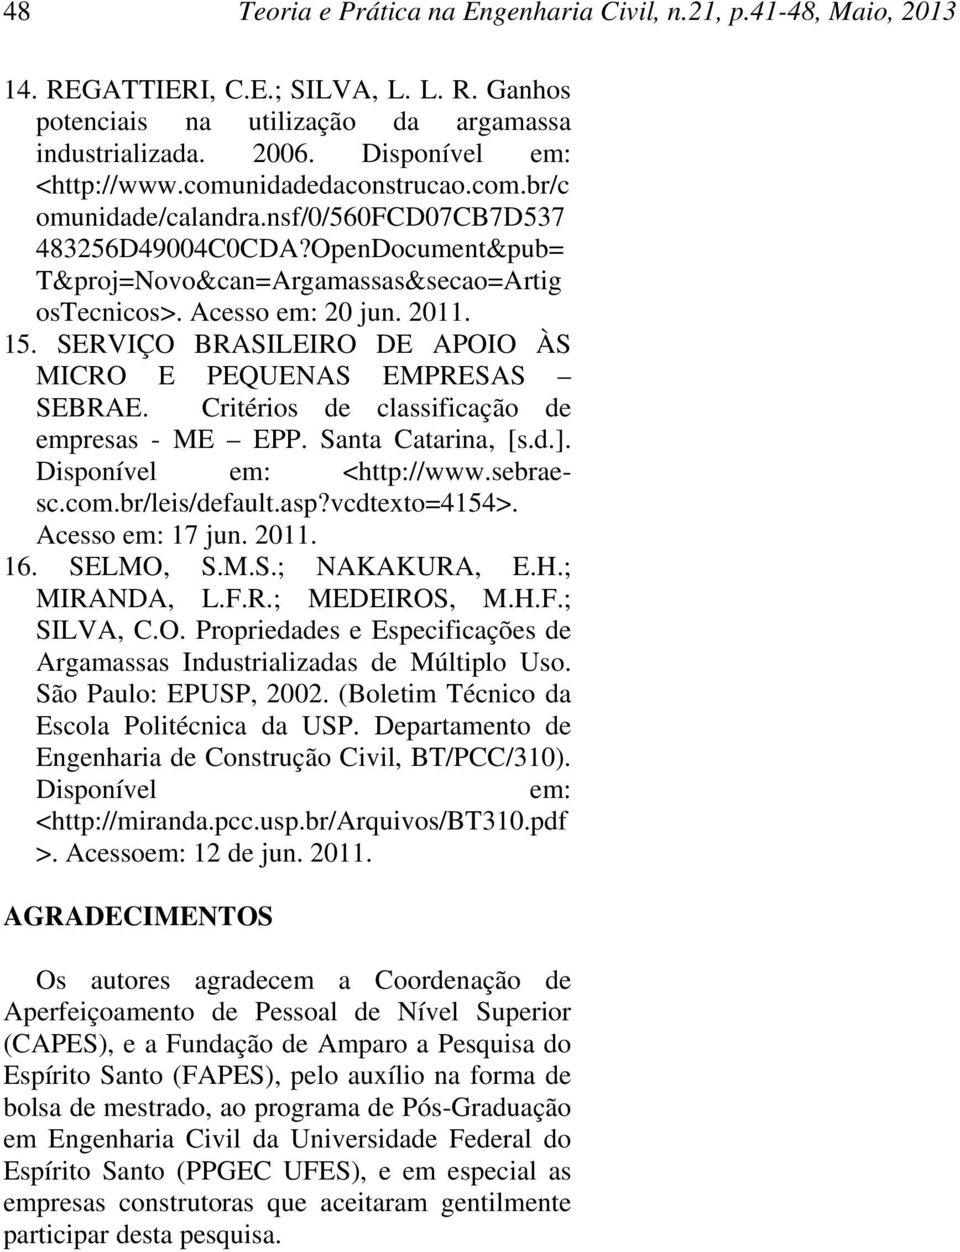 SERVIÇO BRASILEIRO DE APOIO ÀS MICRO E PEQUENAS EMPRESAS SEBRAE. Critérios de classificação de empresas - ME EPP. Santa Catarina, [s.d.]. Disponível em: <http://www.sebraesc.com.br/leis/default.asp?